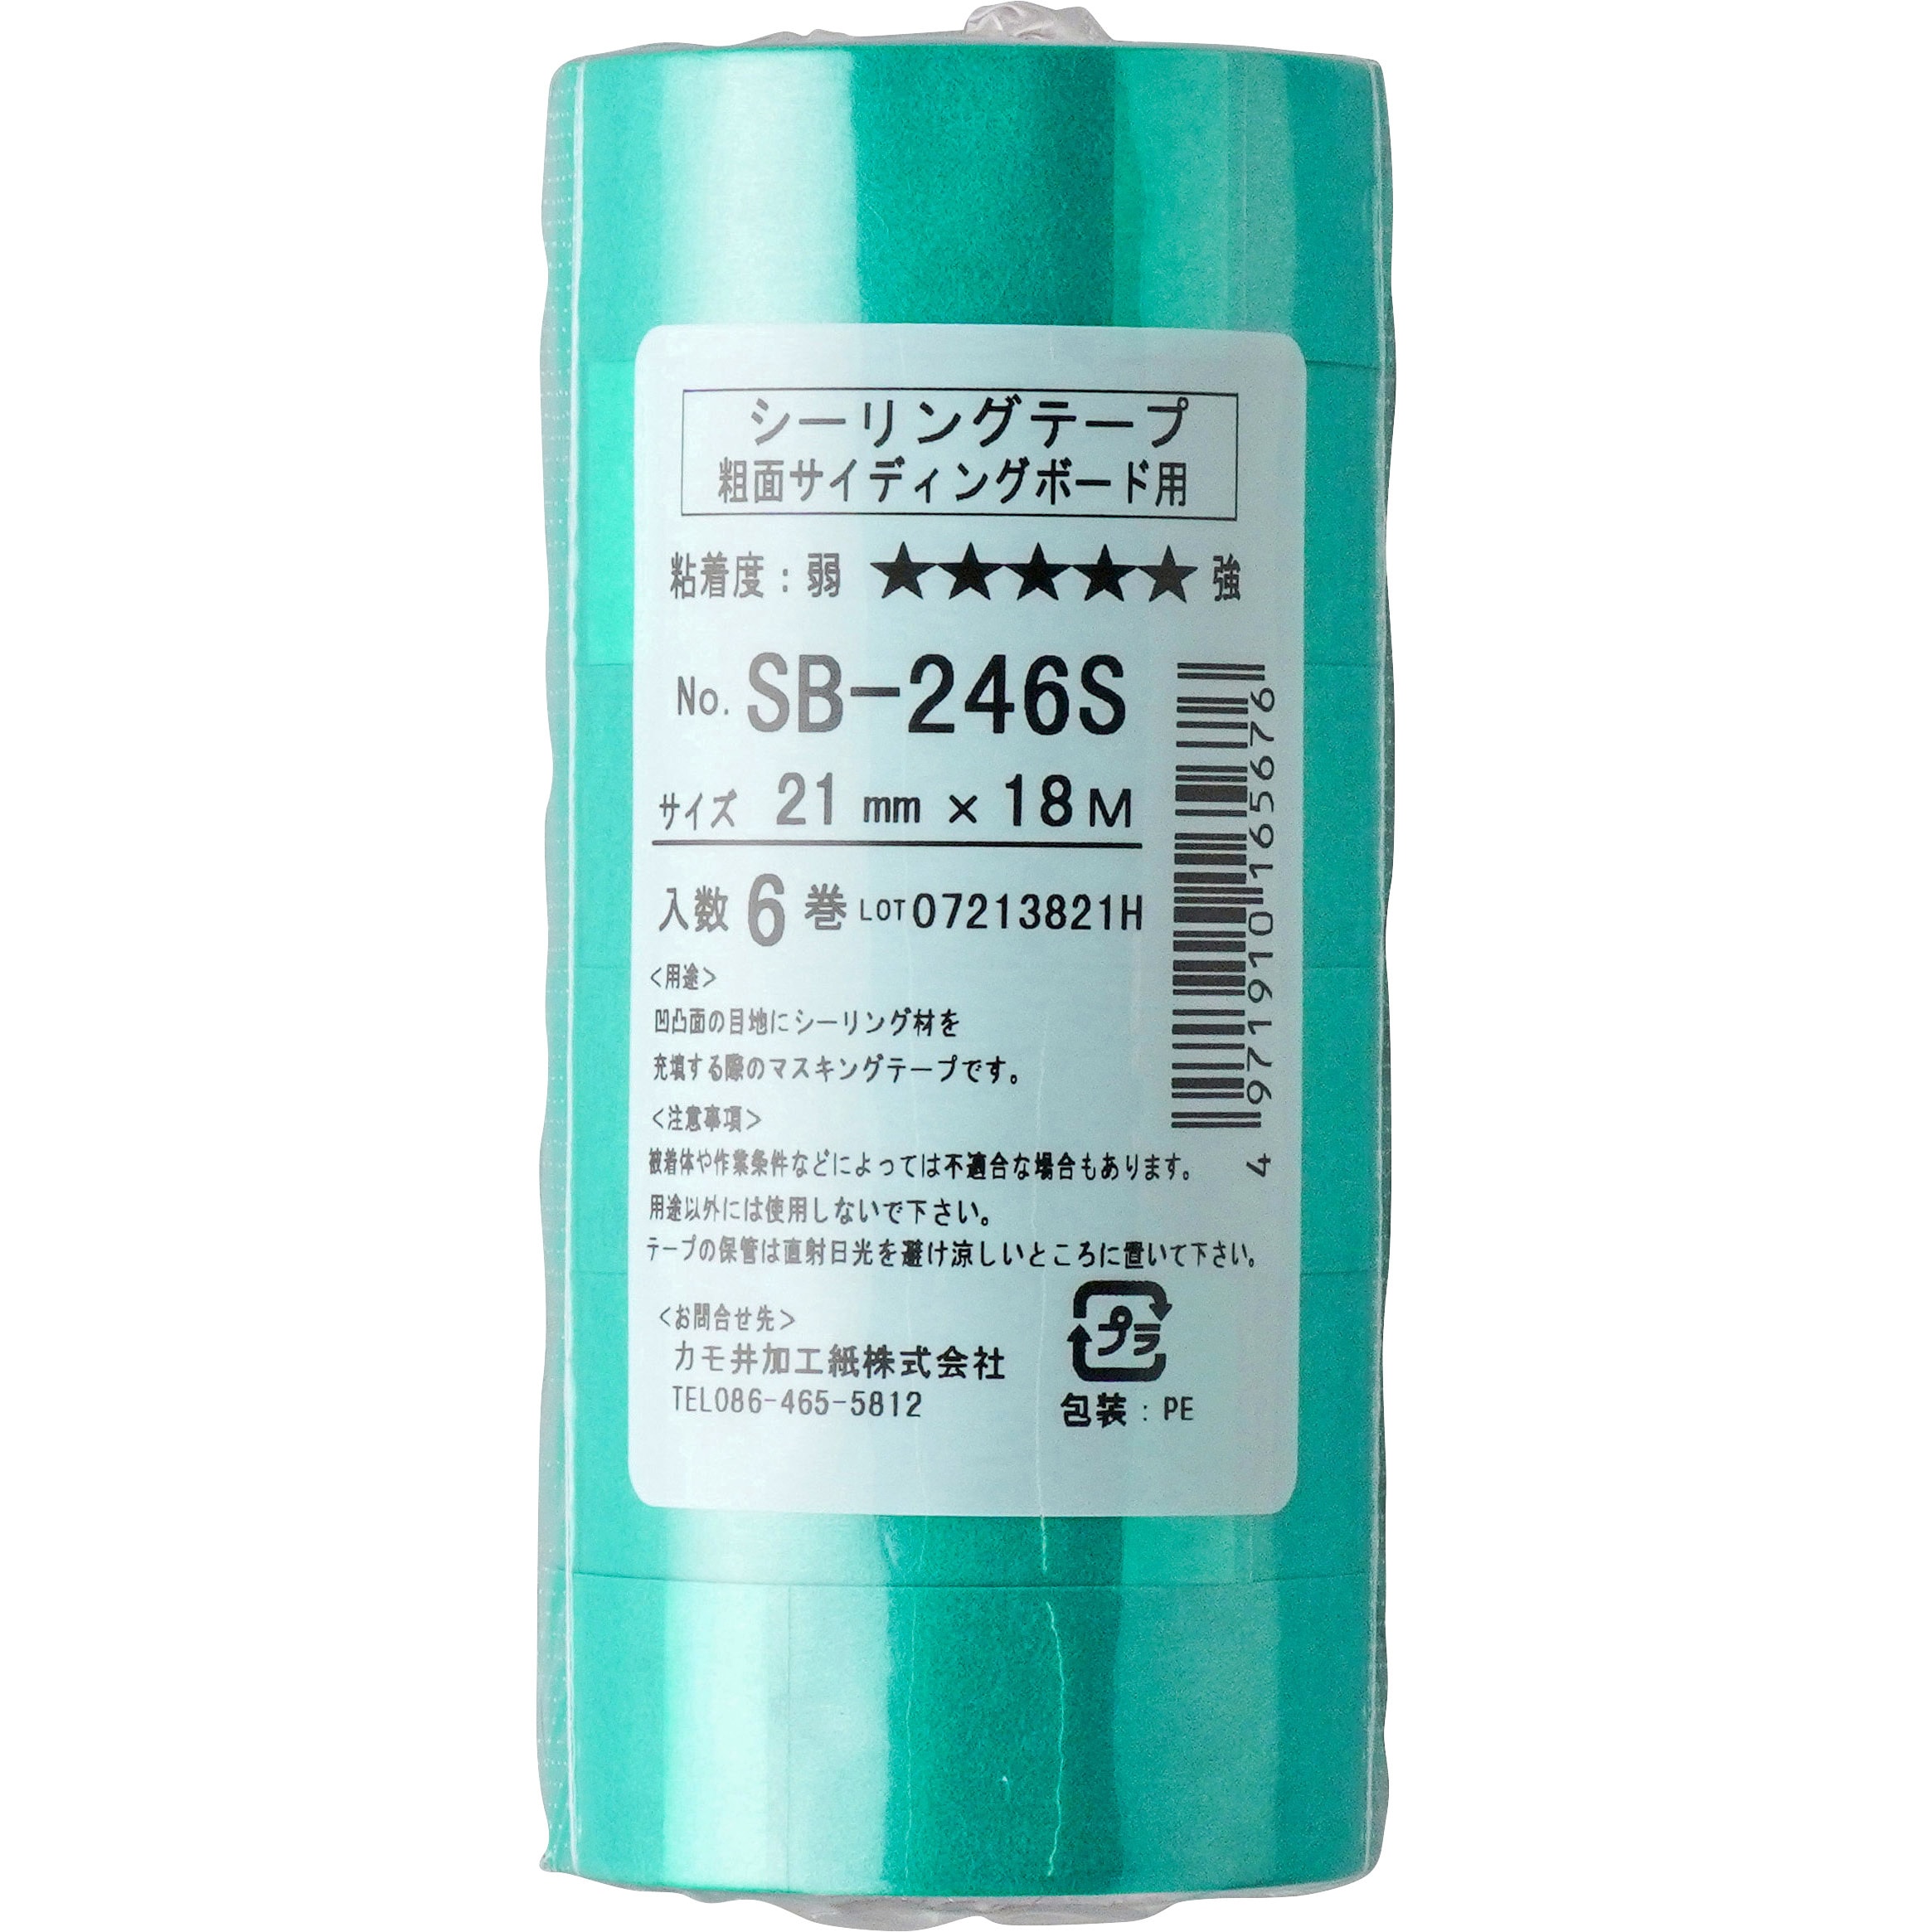 誕生日プレゼント 養生 マスキングテープ カモ井 SB-246S 粗面サイディングボード用 21mm×18m 60巻入り 